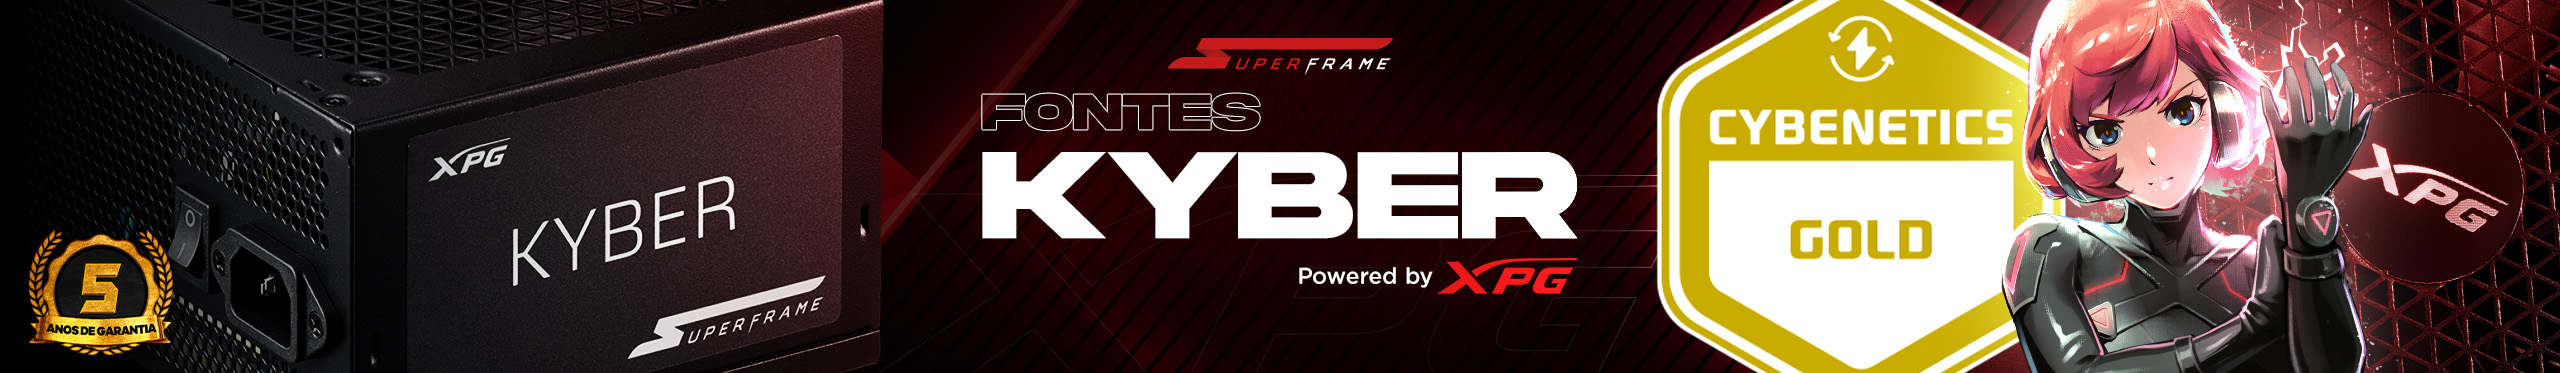 Agora as fontes XPG SuperFrame Kyber estão aprovadas pelo selo Cybenetics de qualidade!